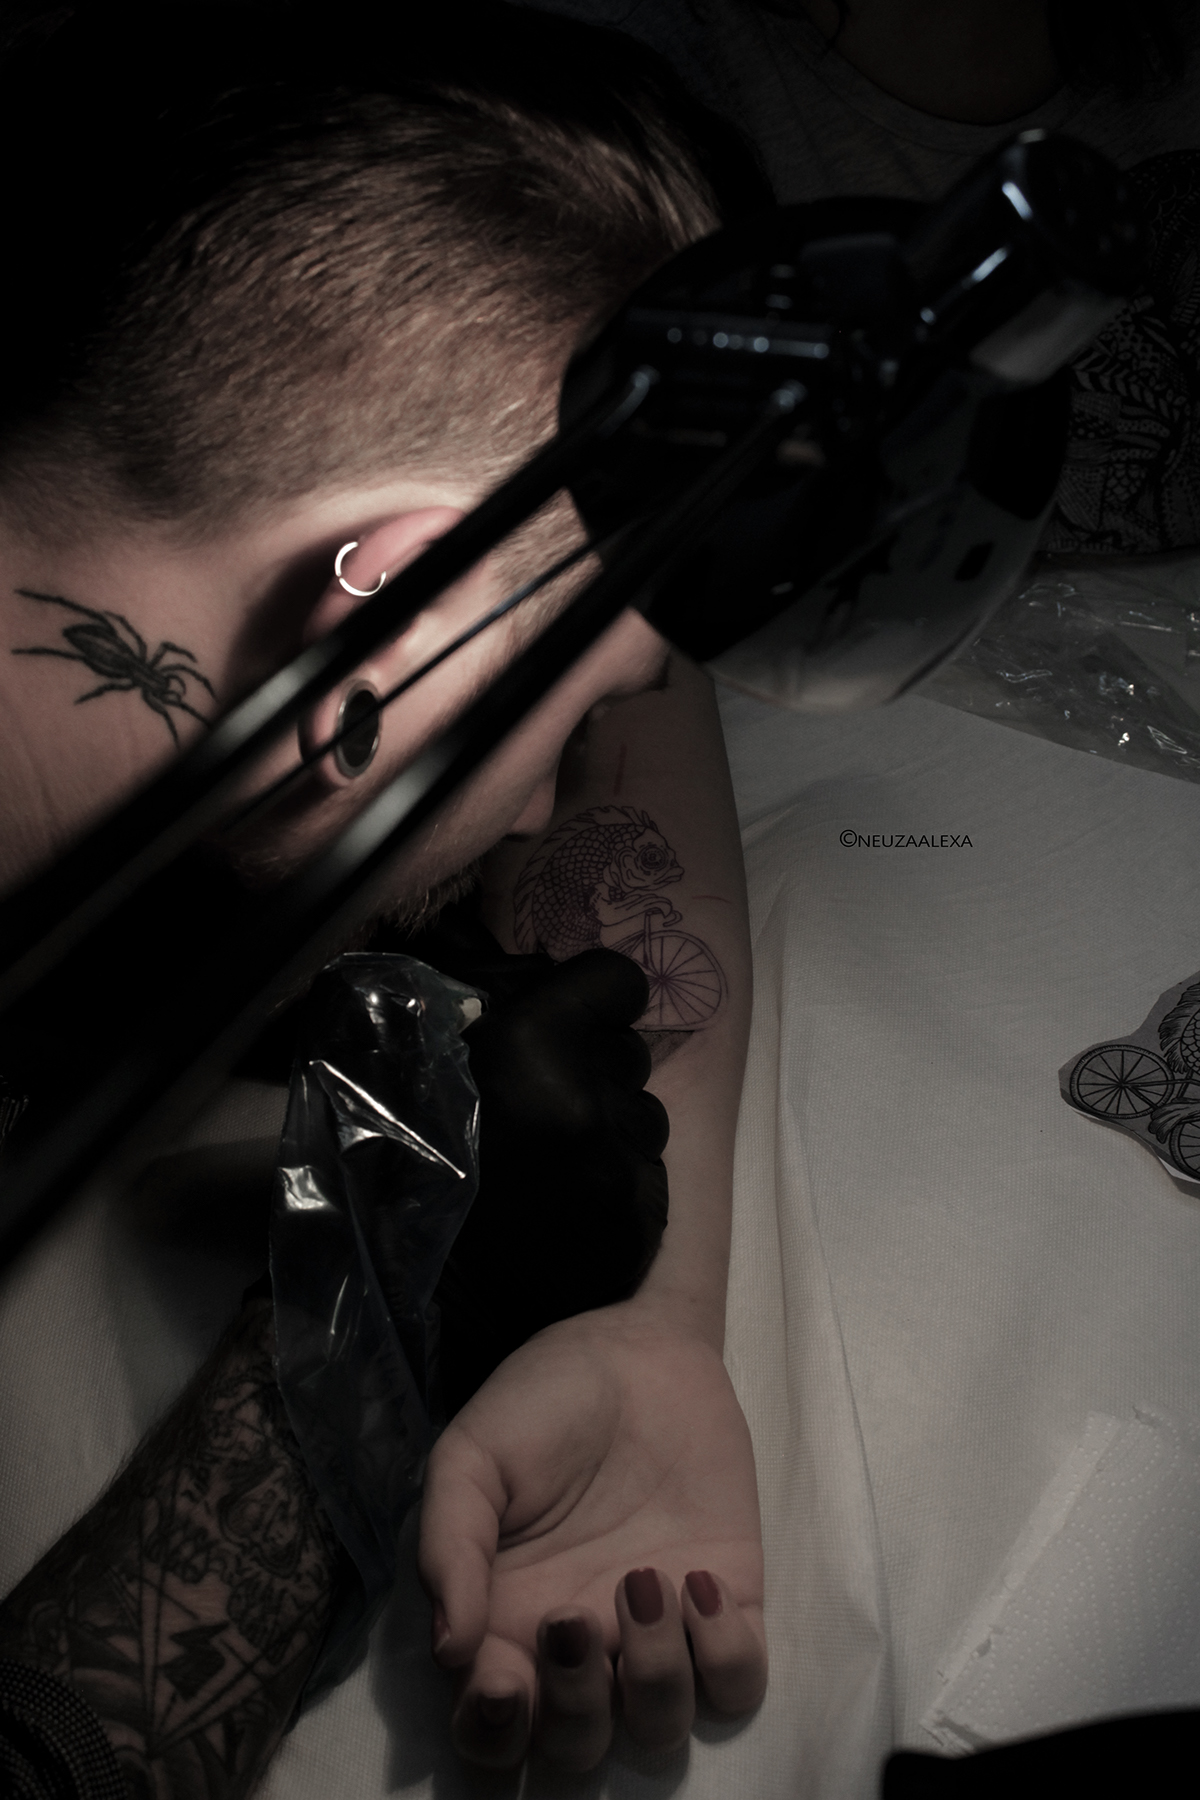 neuzaalexaphoto tattoos photographer Project Canon tatuador tattooartist neuzaalexa myeyesinpixels Portugal